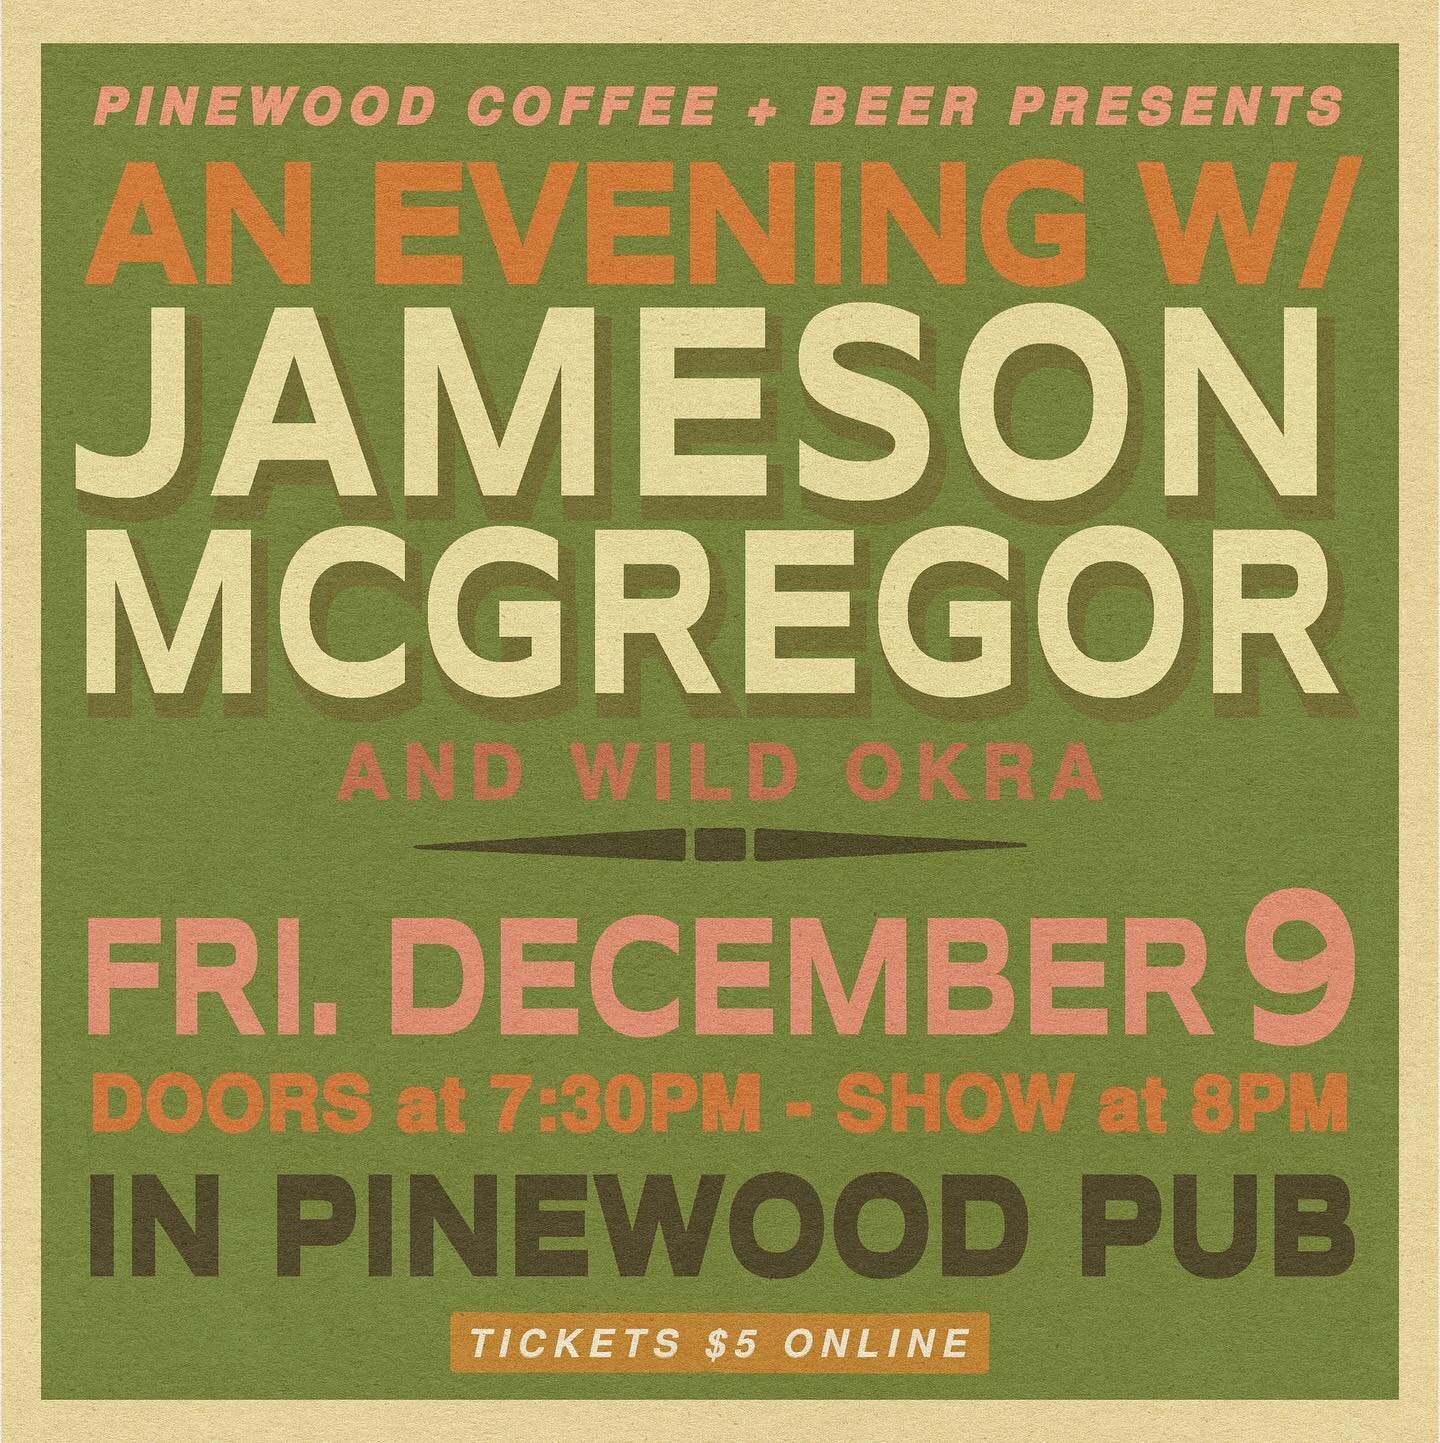 TONIGHT at 8pm in the courtyard @jamesonmcgregor w/ wild okra
$5 pre sale ticket online - $5 pints of Waco brewed beers